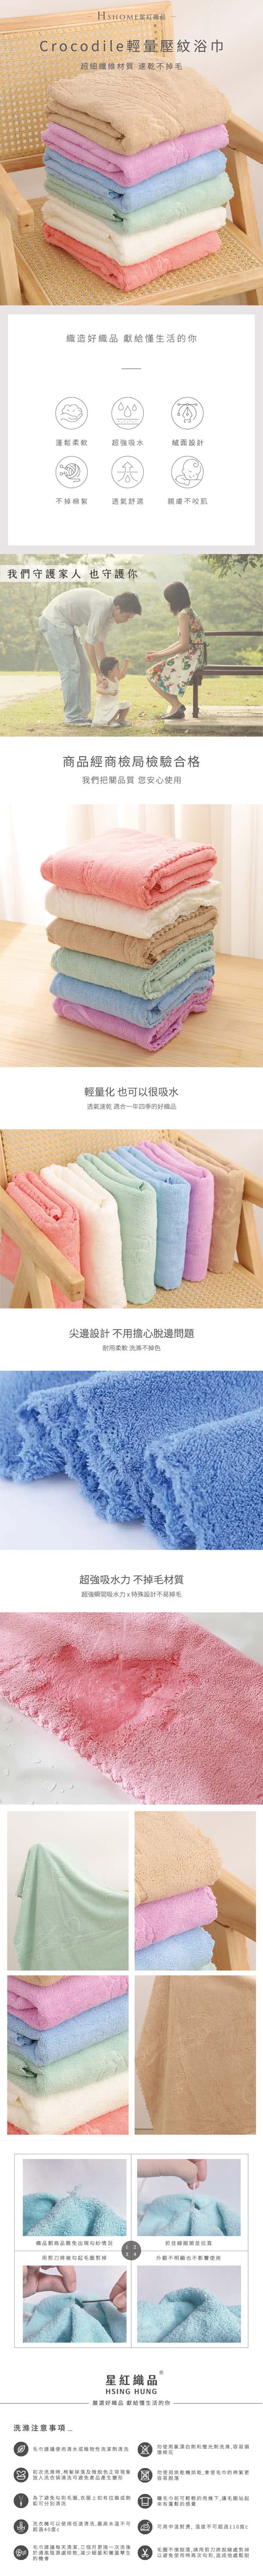 星紅織品 鱷魚正版授權輕量壓紋浴巾-12入組(藍/粉/綠/紫